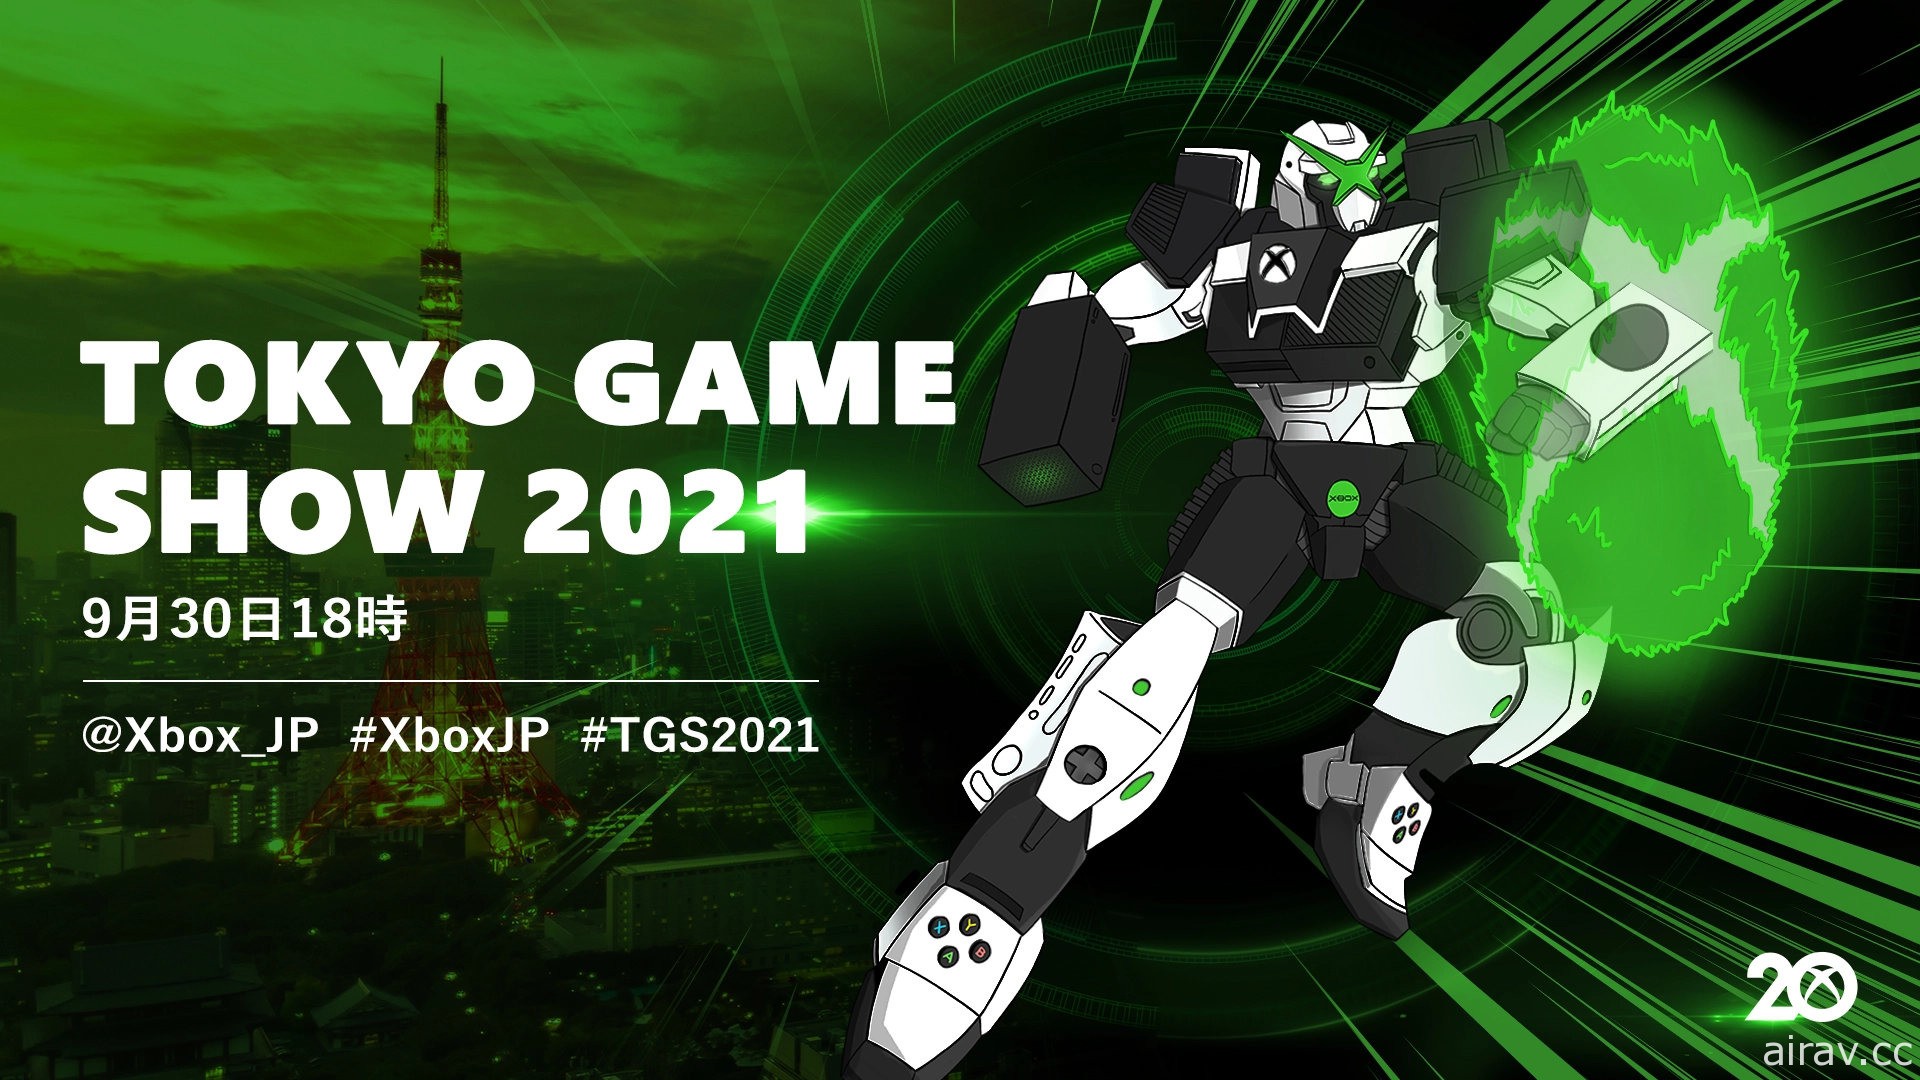 【TGS 21】日本微软宣布将参加 TGS 展出 预定 9/30 带来 TGS 特别直播节目